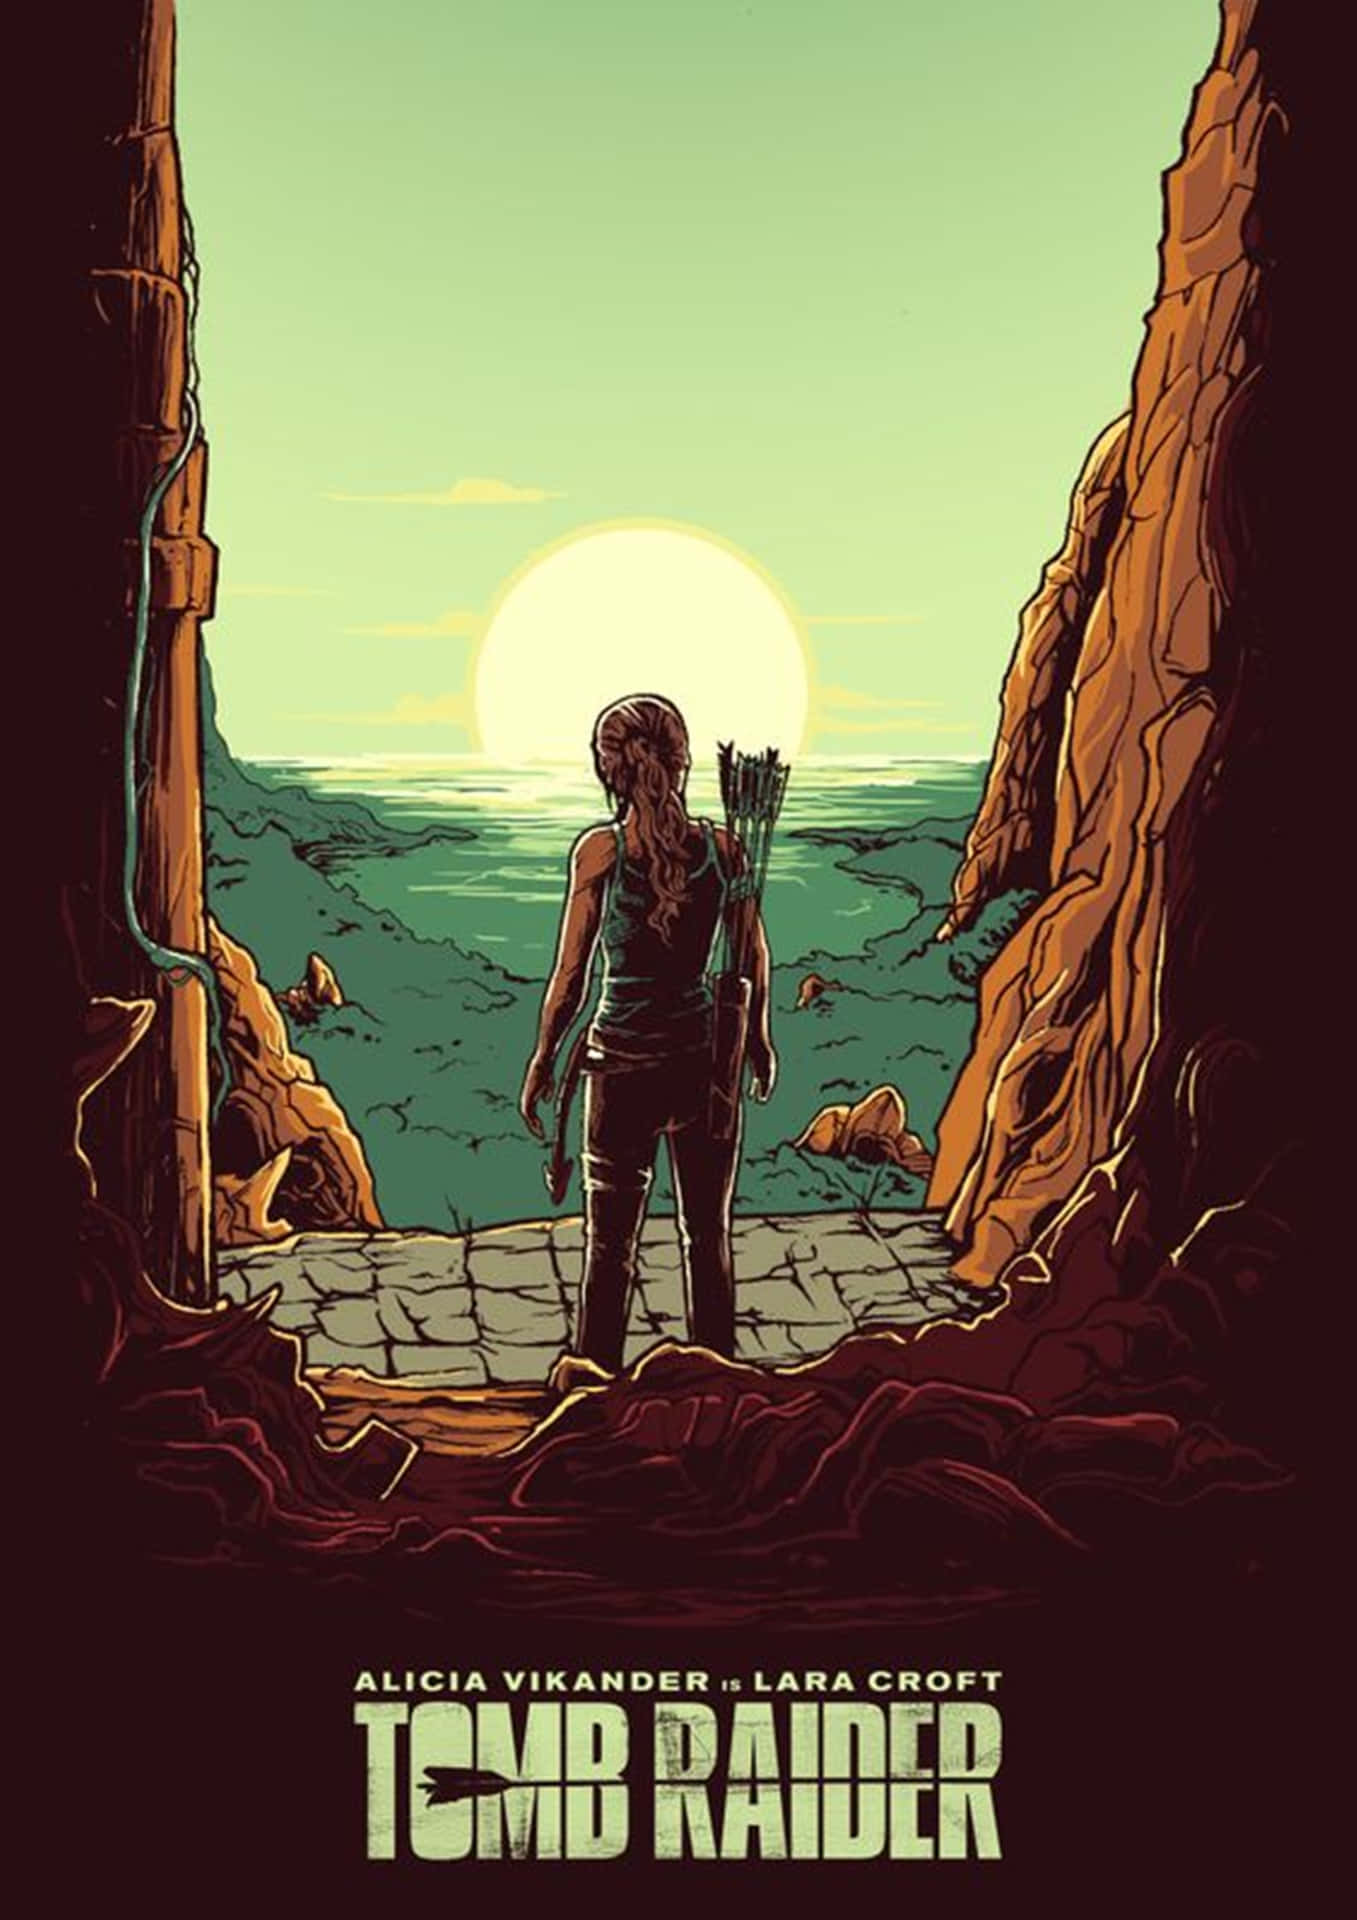 Erkundelara Crofts Welten Auf Dem Smartphone Im Tomb Raider-design. Wallpaper